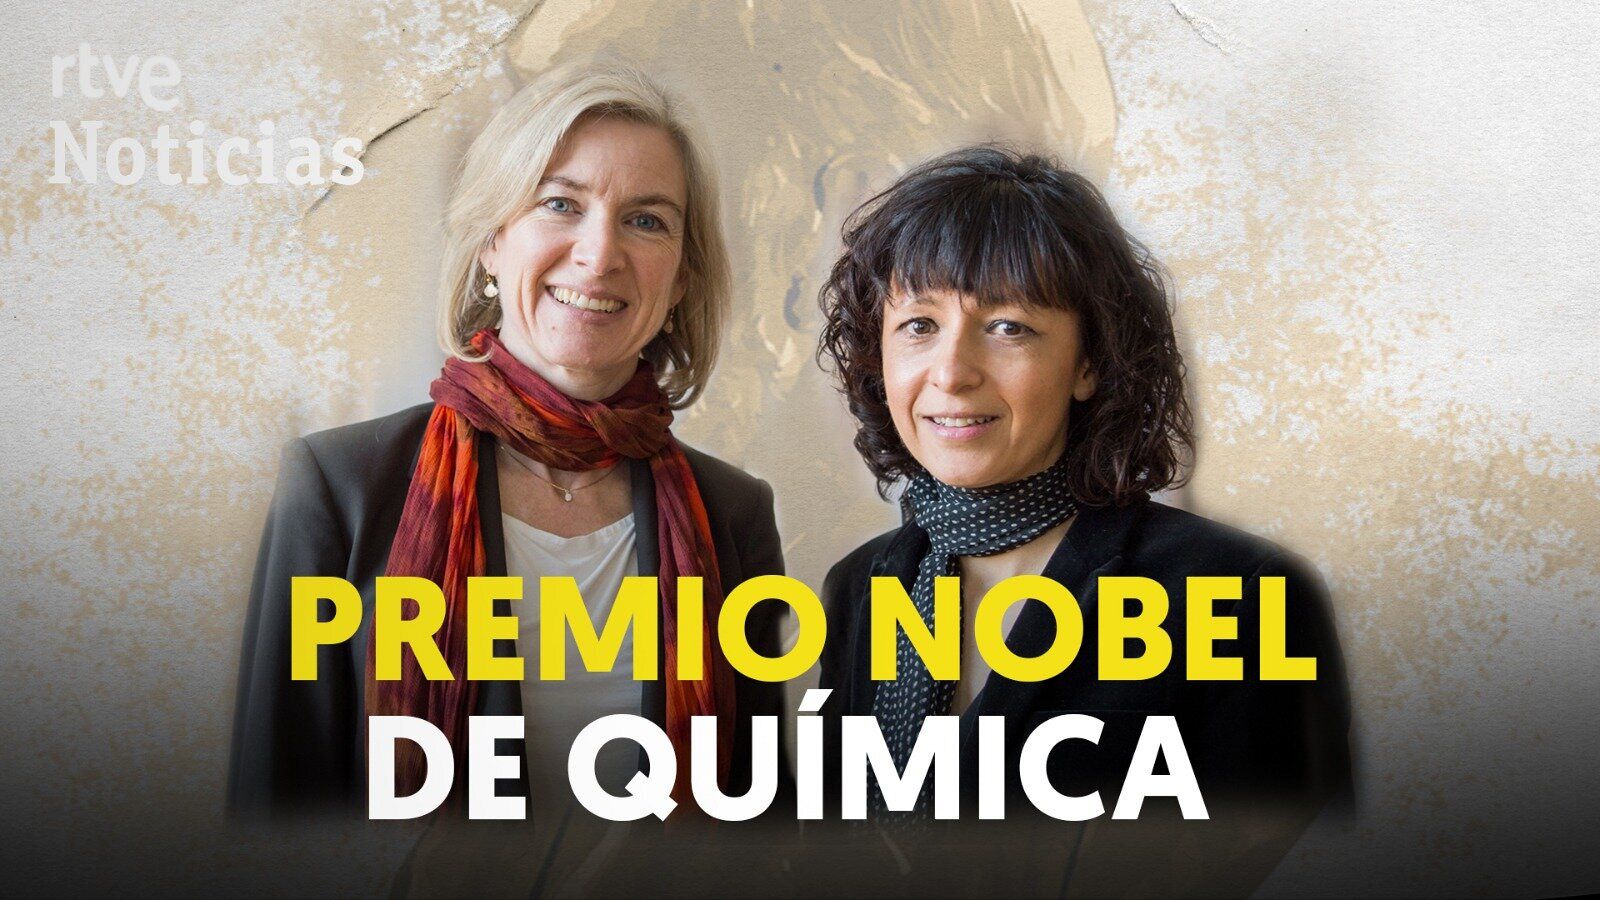 La edición del genoma otorga el Nobel de Química 2020 a Emmanuelle Charpentier y Jennifer Doudna